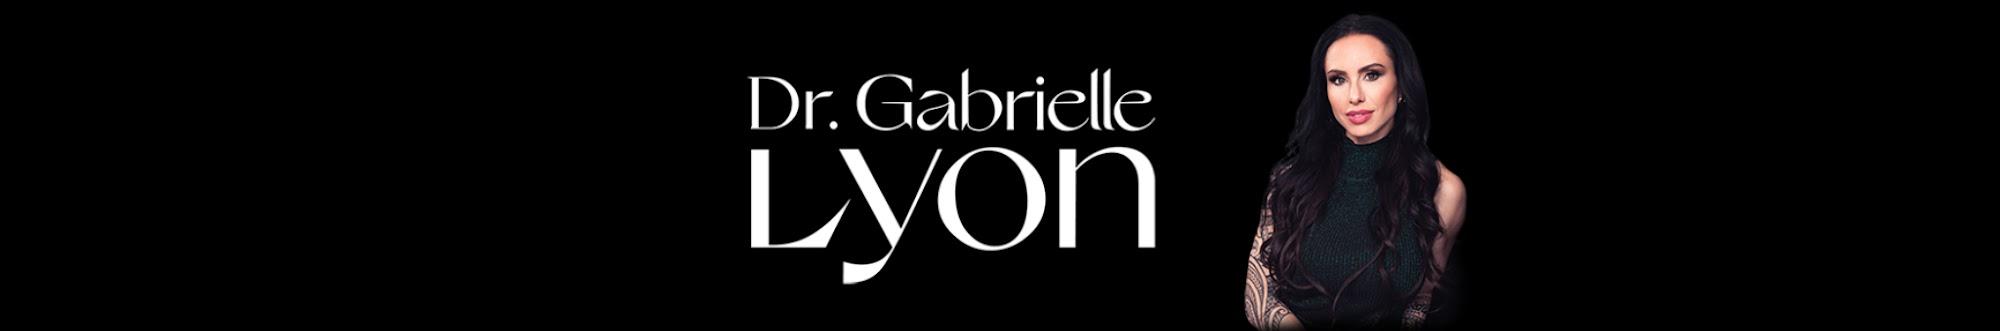 Dr. Gabrielle Lyon